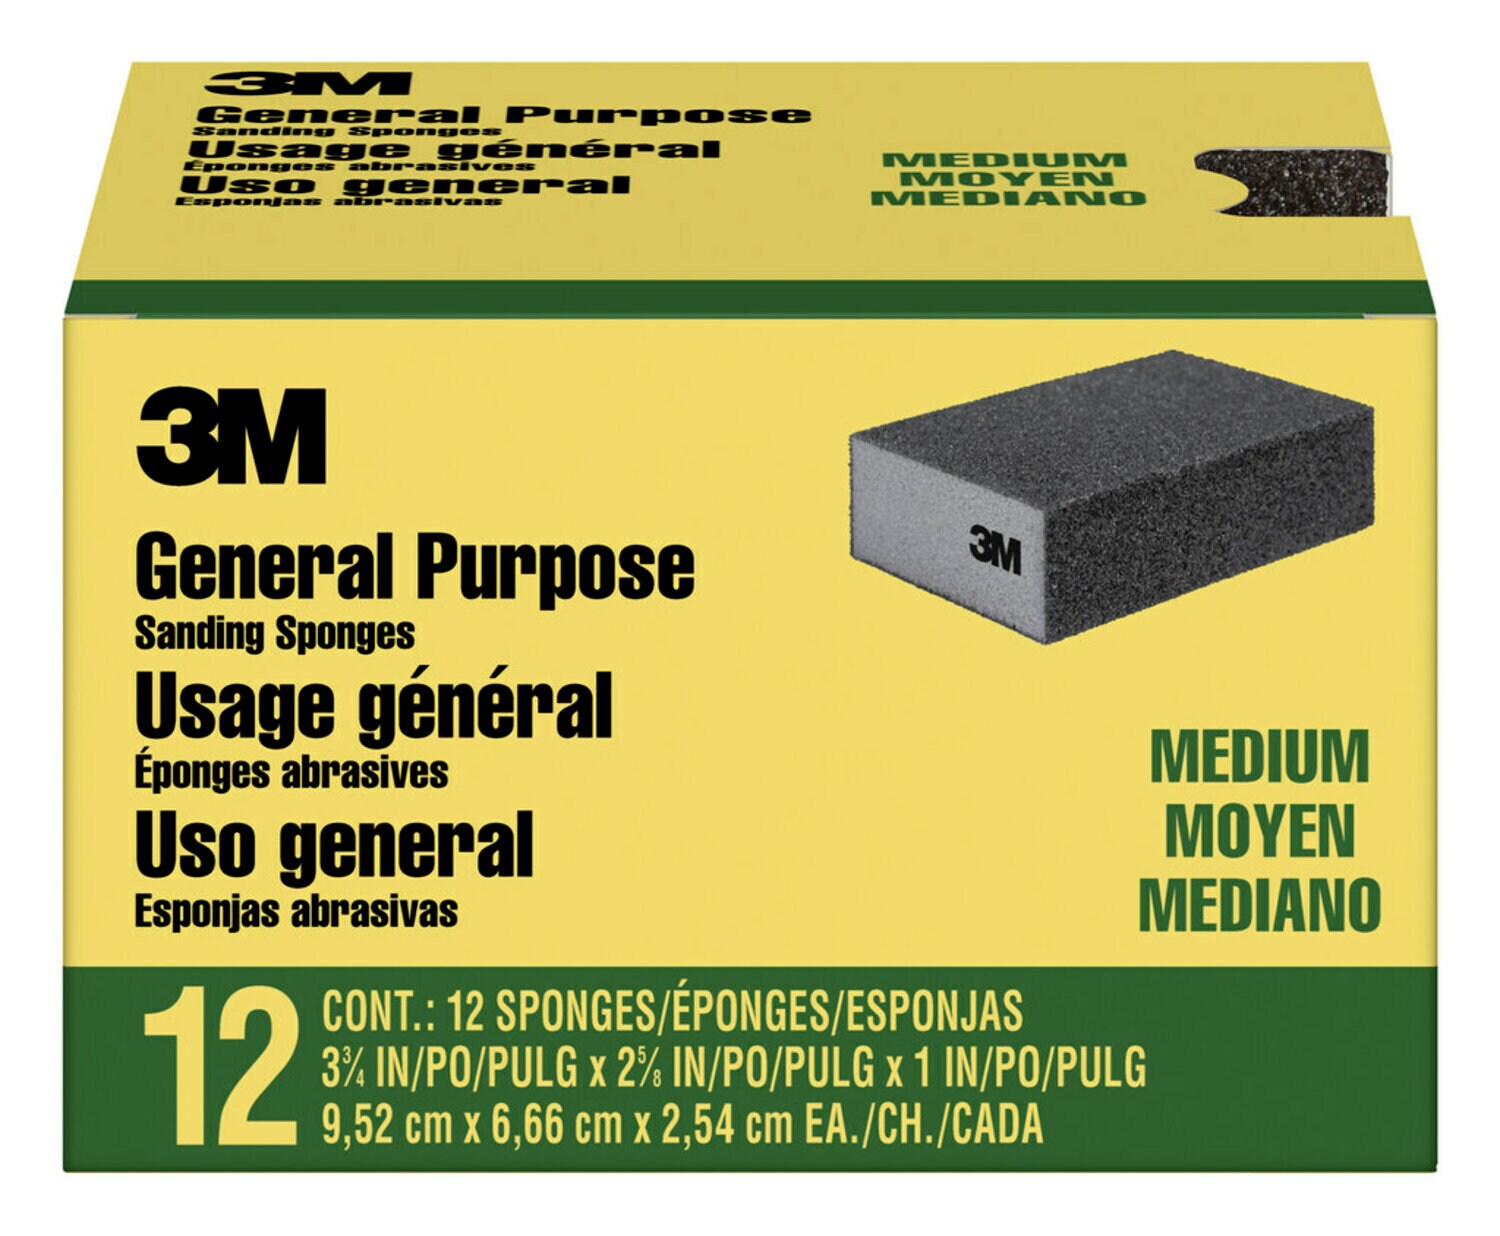 7100173930 - 3M General Purpose Sanding Sponge CP002-12P, Block, 3 3/4 in x 2 5/8 in x 1 in, Medium, 12/pk, 4 pks/cs